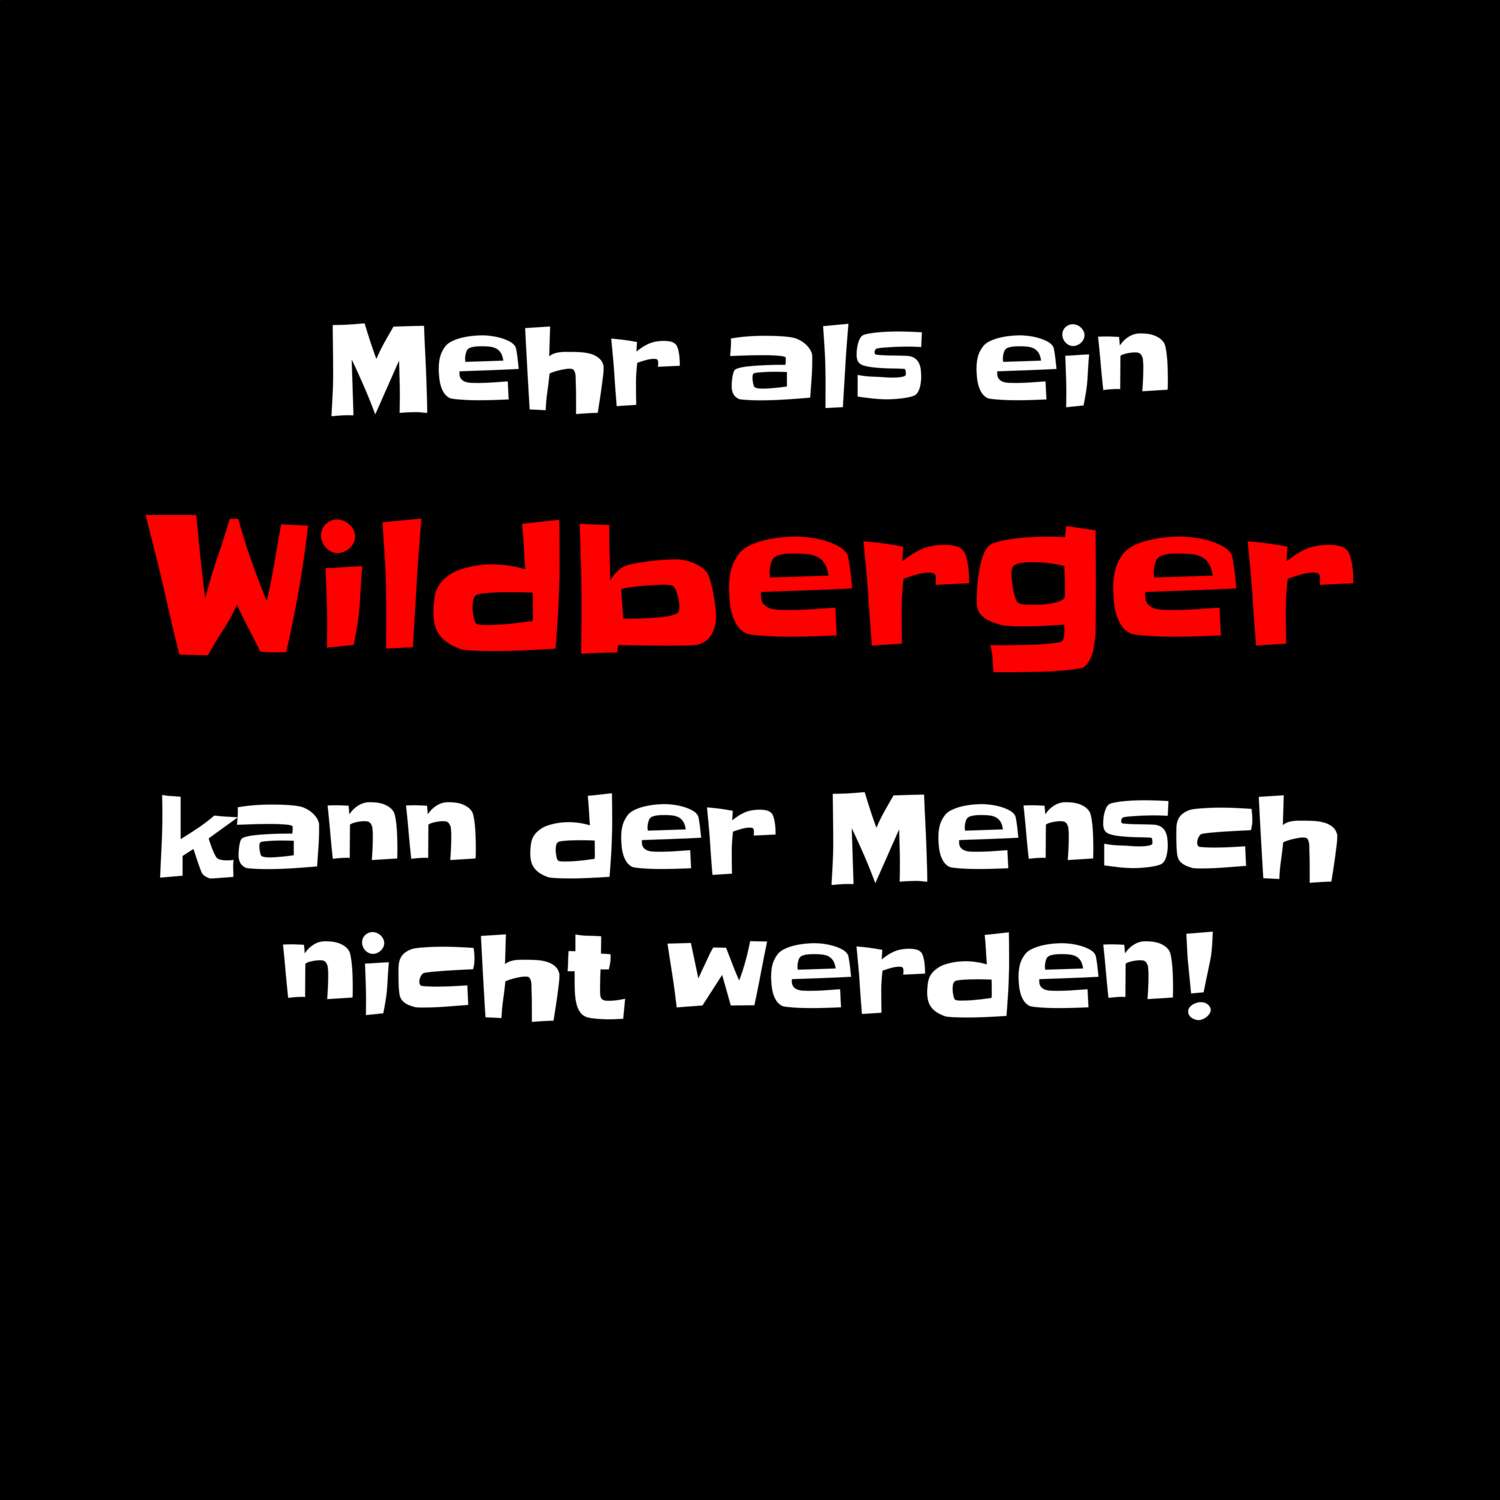 Wildberg T-Shirt »Mehr als ein«